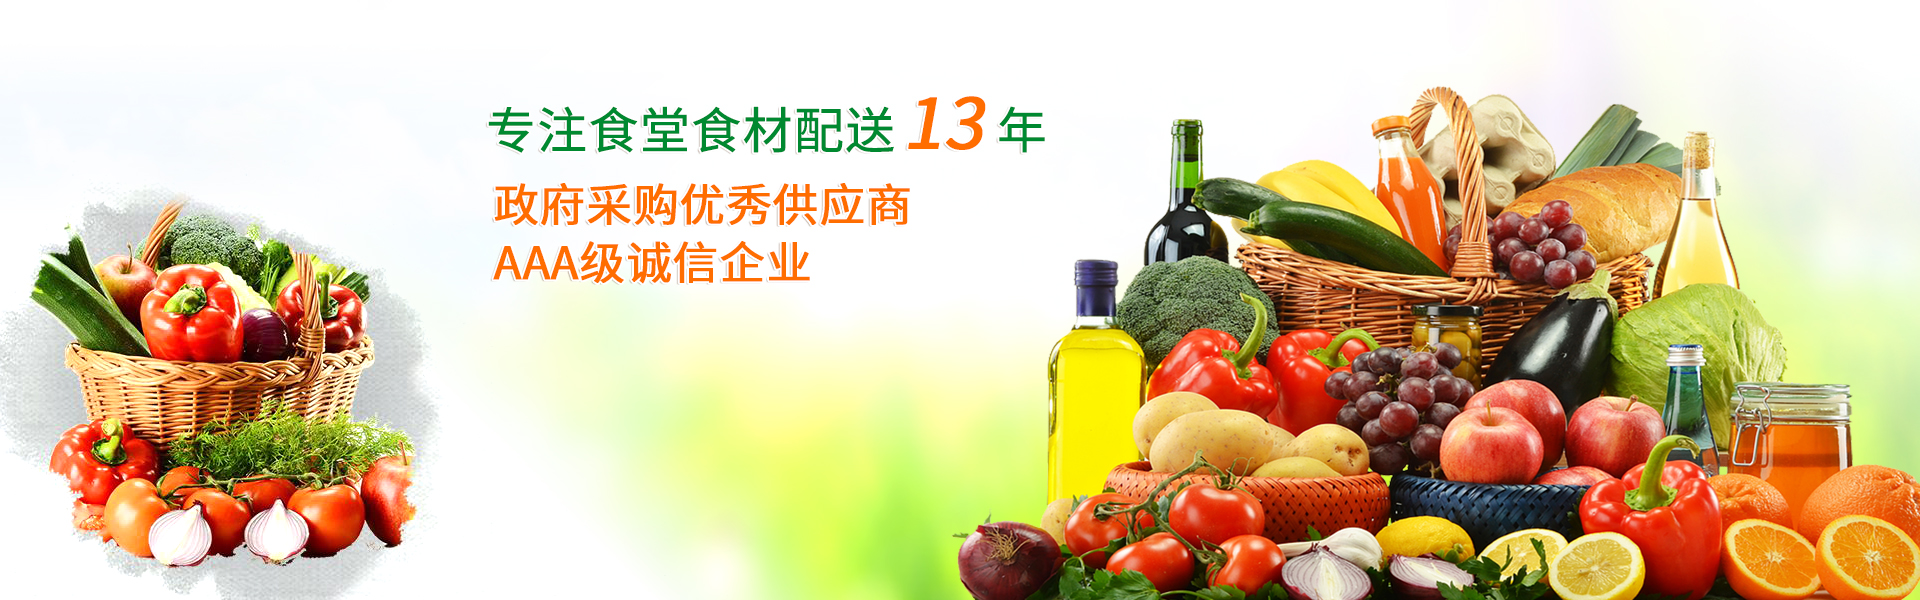 深圳送菜公司—欣美农副产品配送领先一步，健康到家